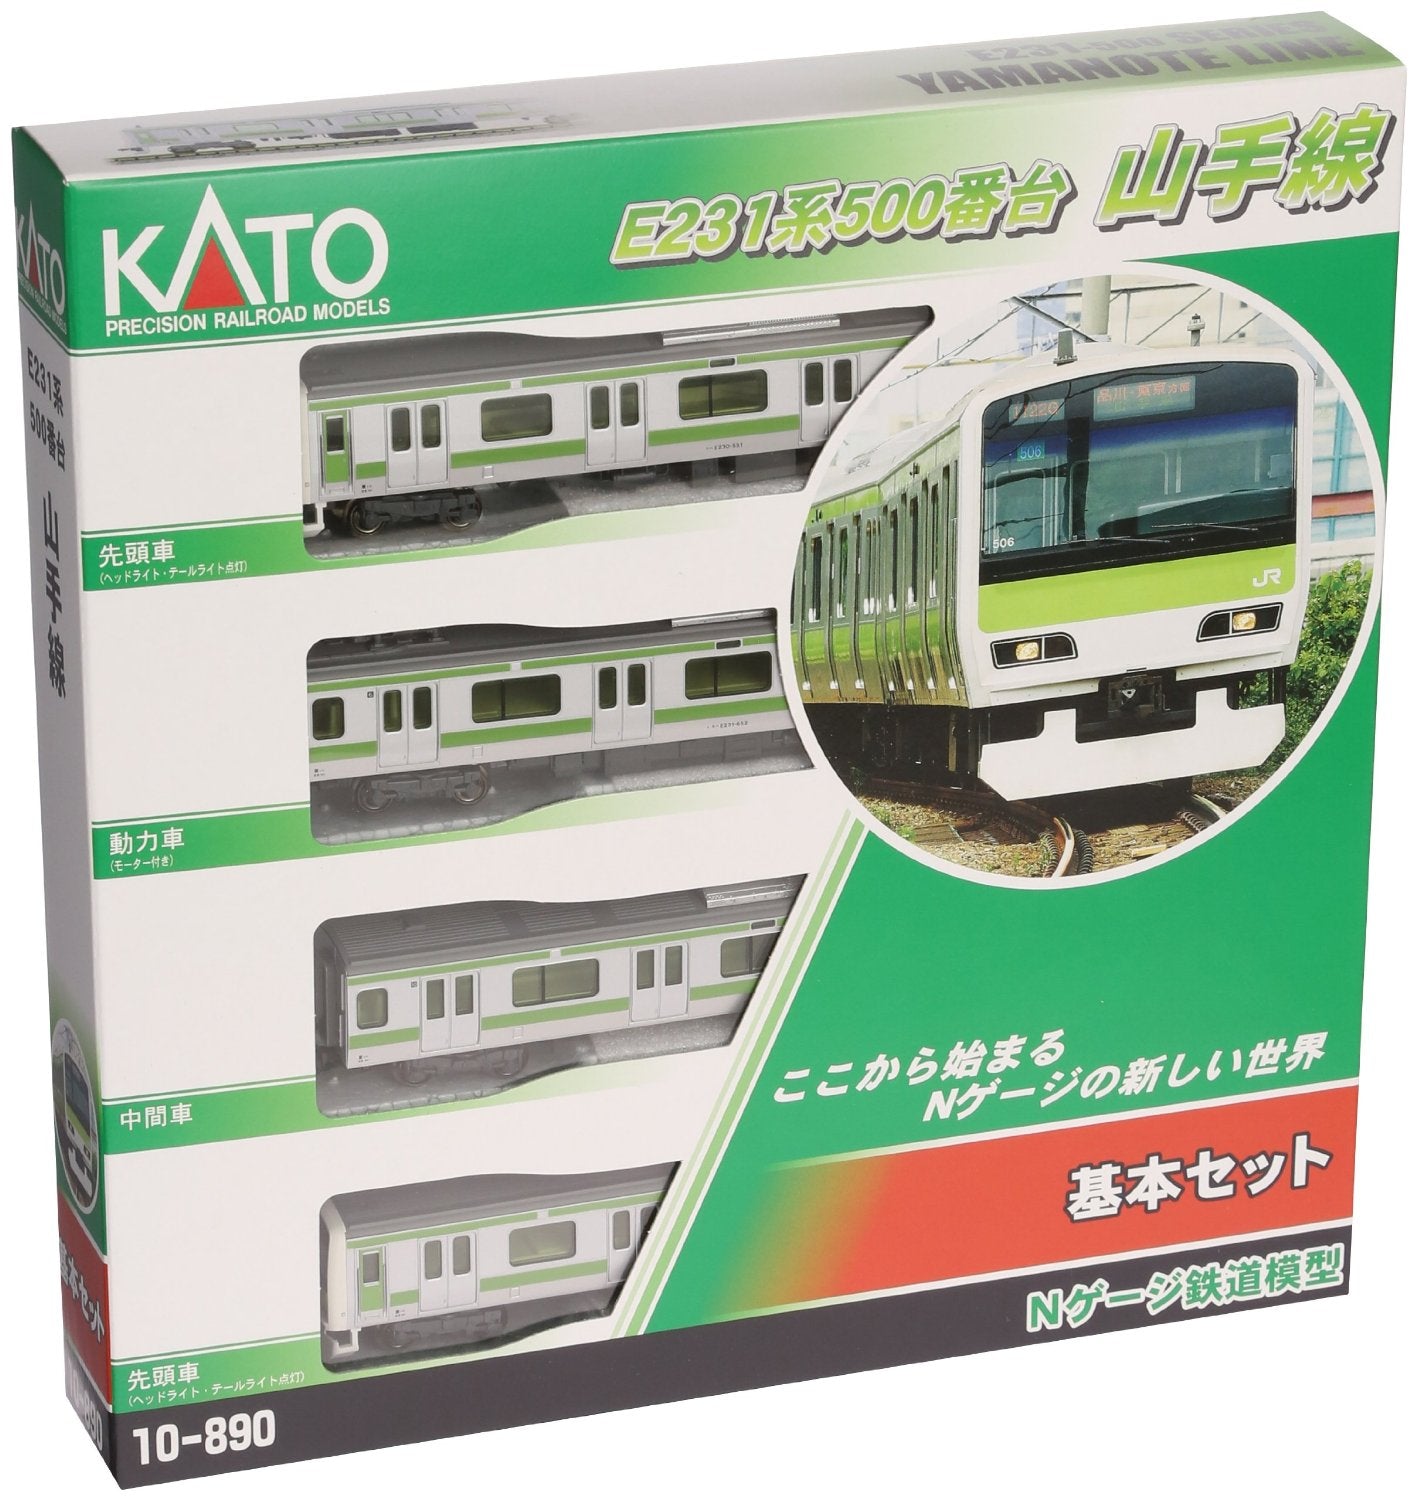 10-890 E231-500 Yamanote Line Basic 4-Car Set